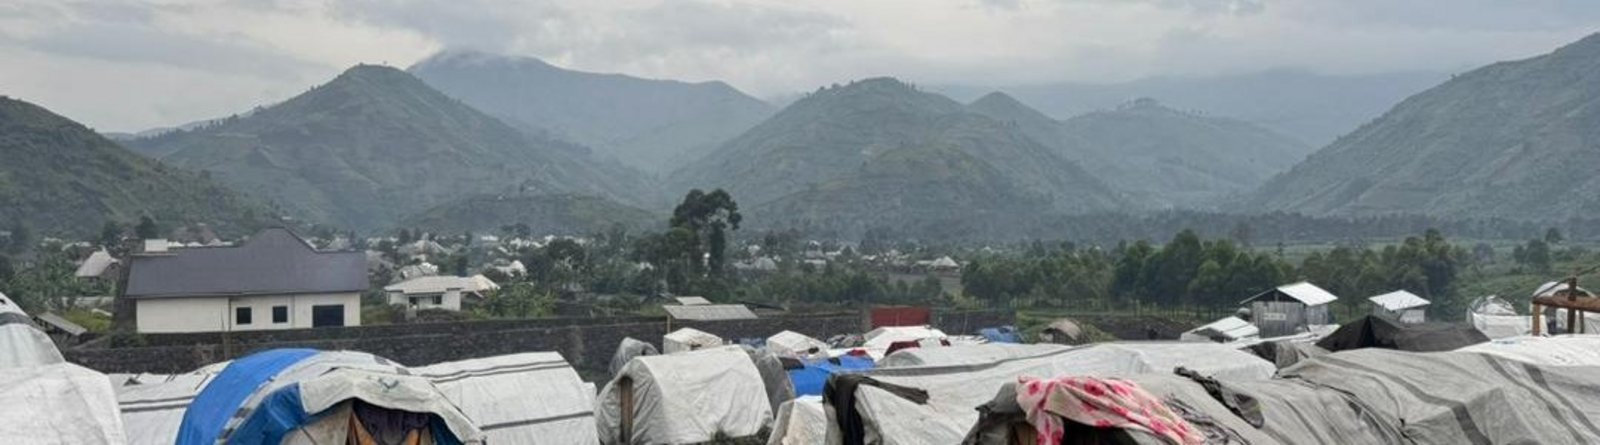 Vertriebenenlager in der Nähe von Goma Demokratische Republik Kongo